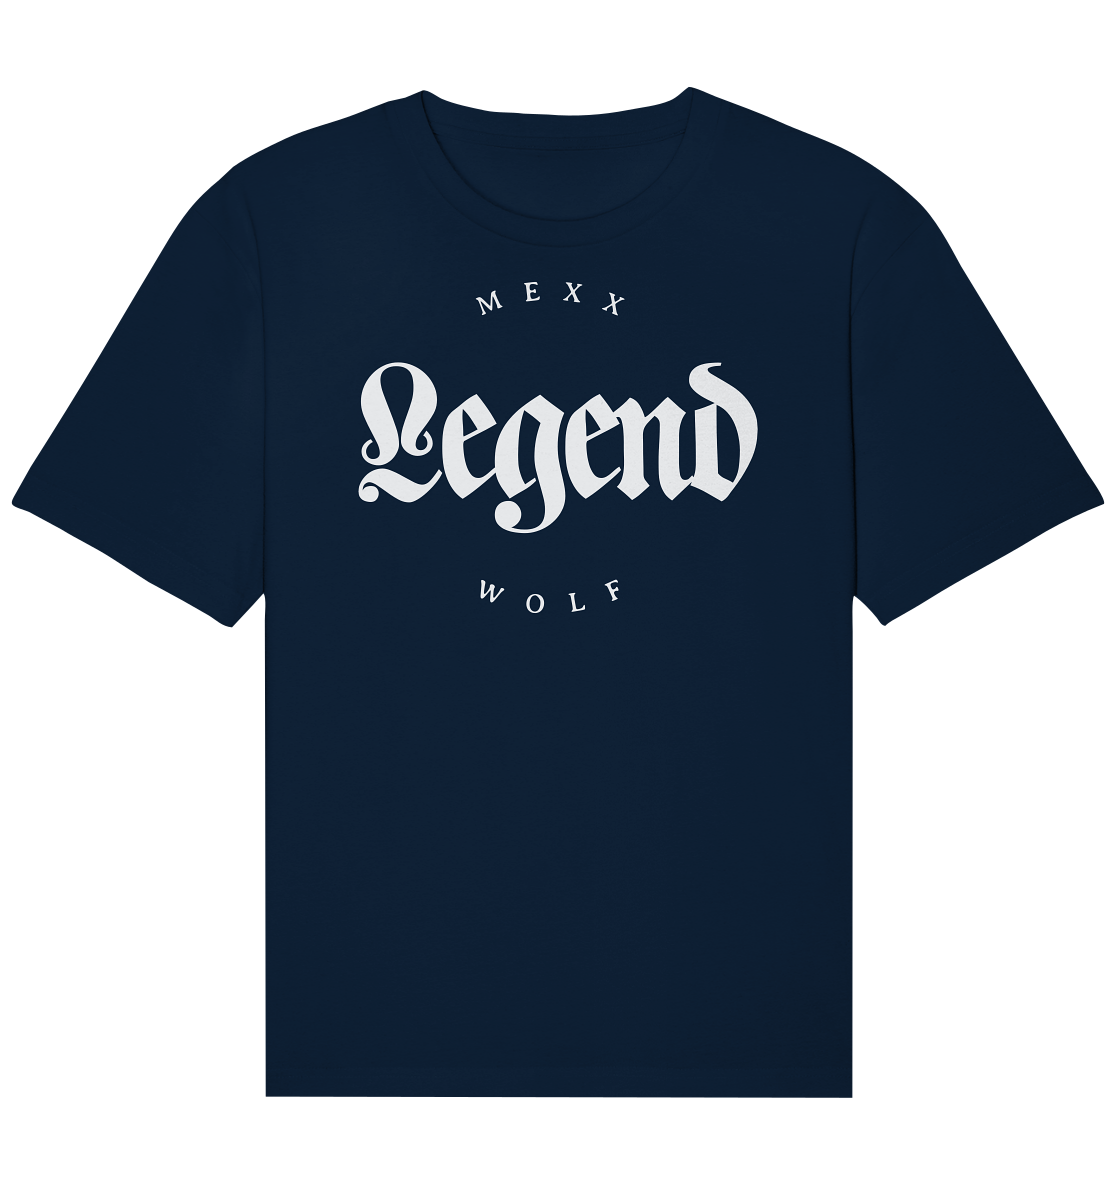 MW Legend - Organic Relaxed Shirt